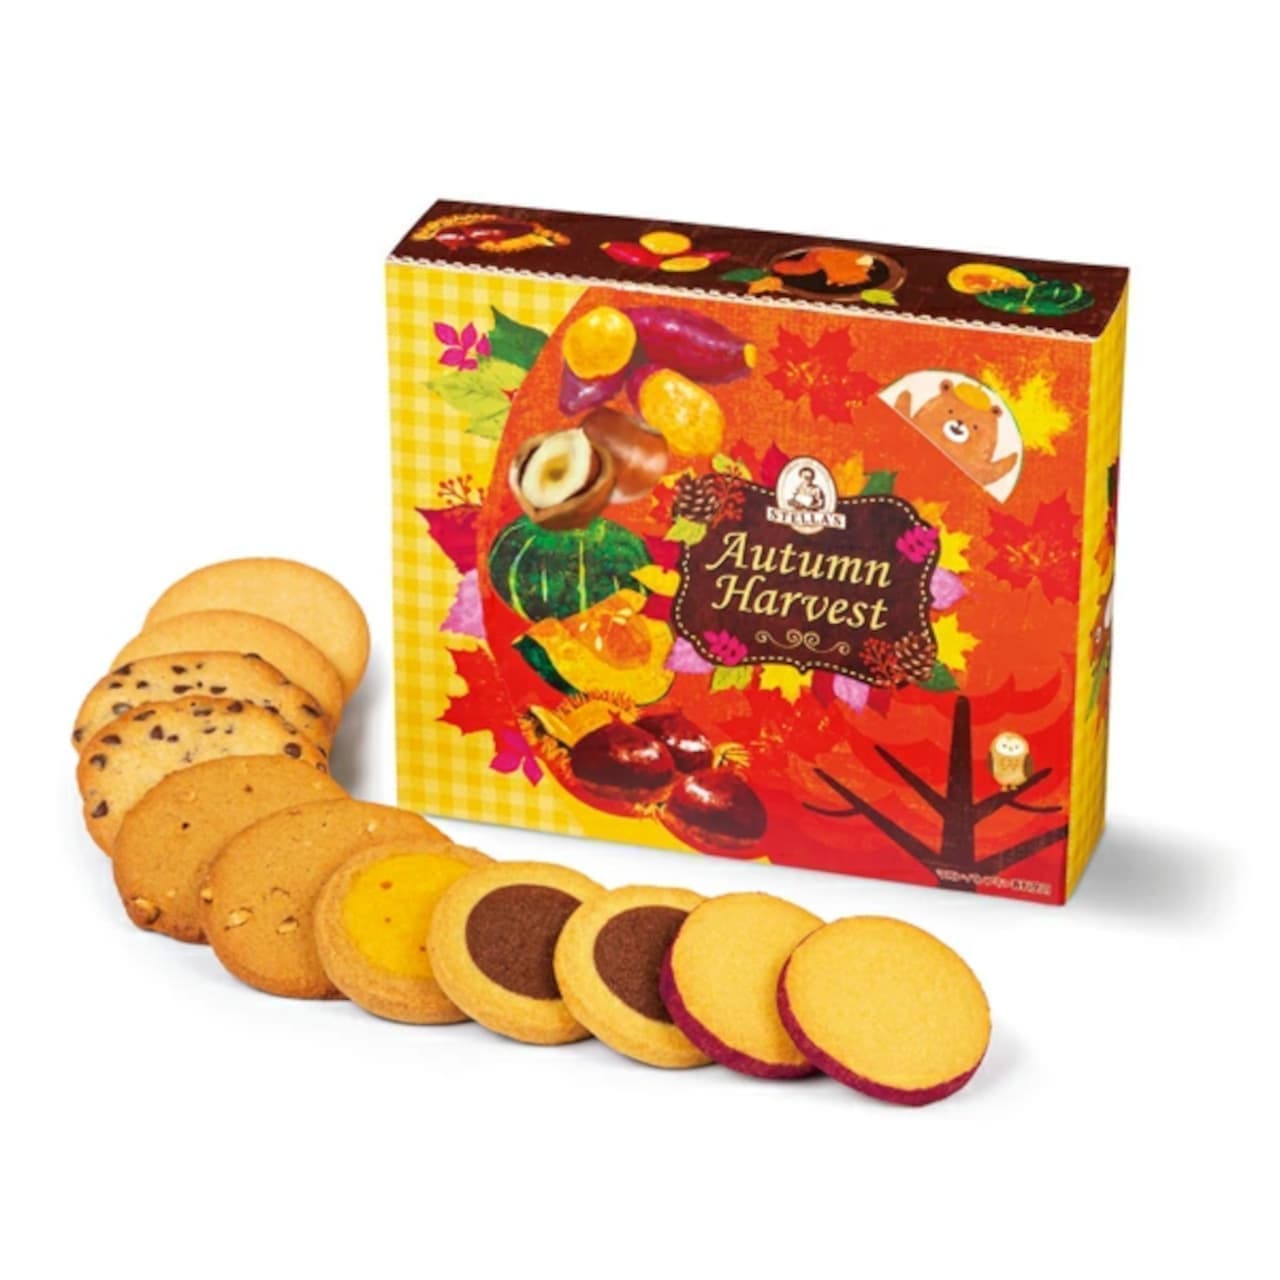 ステラおばさんのクッキー “2021秋の収穫祭ギフト” 登場